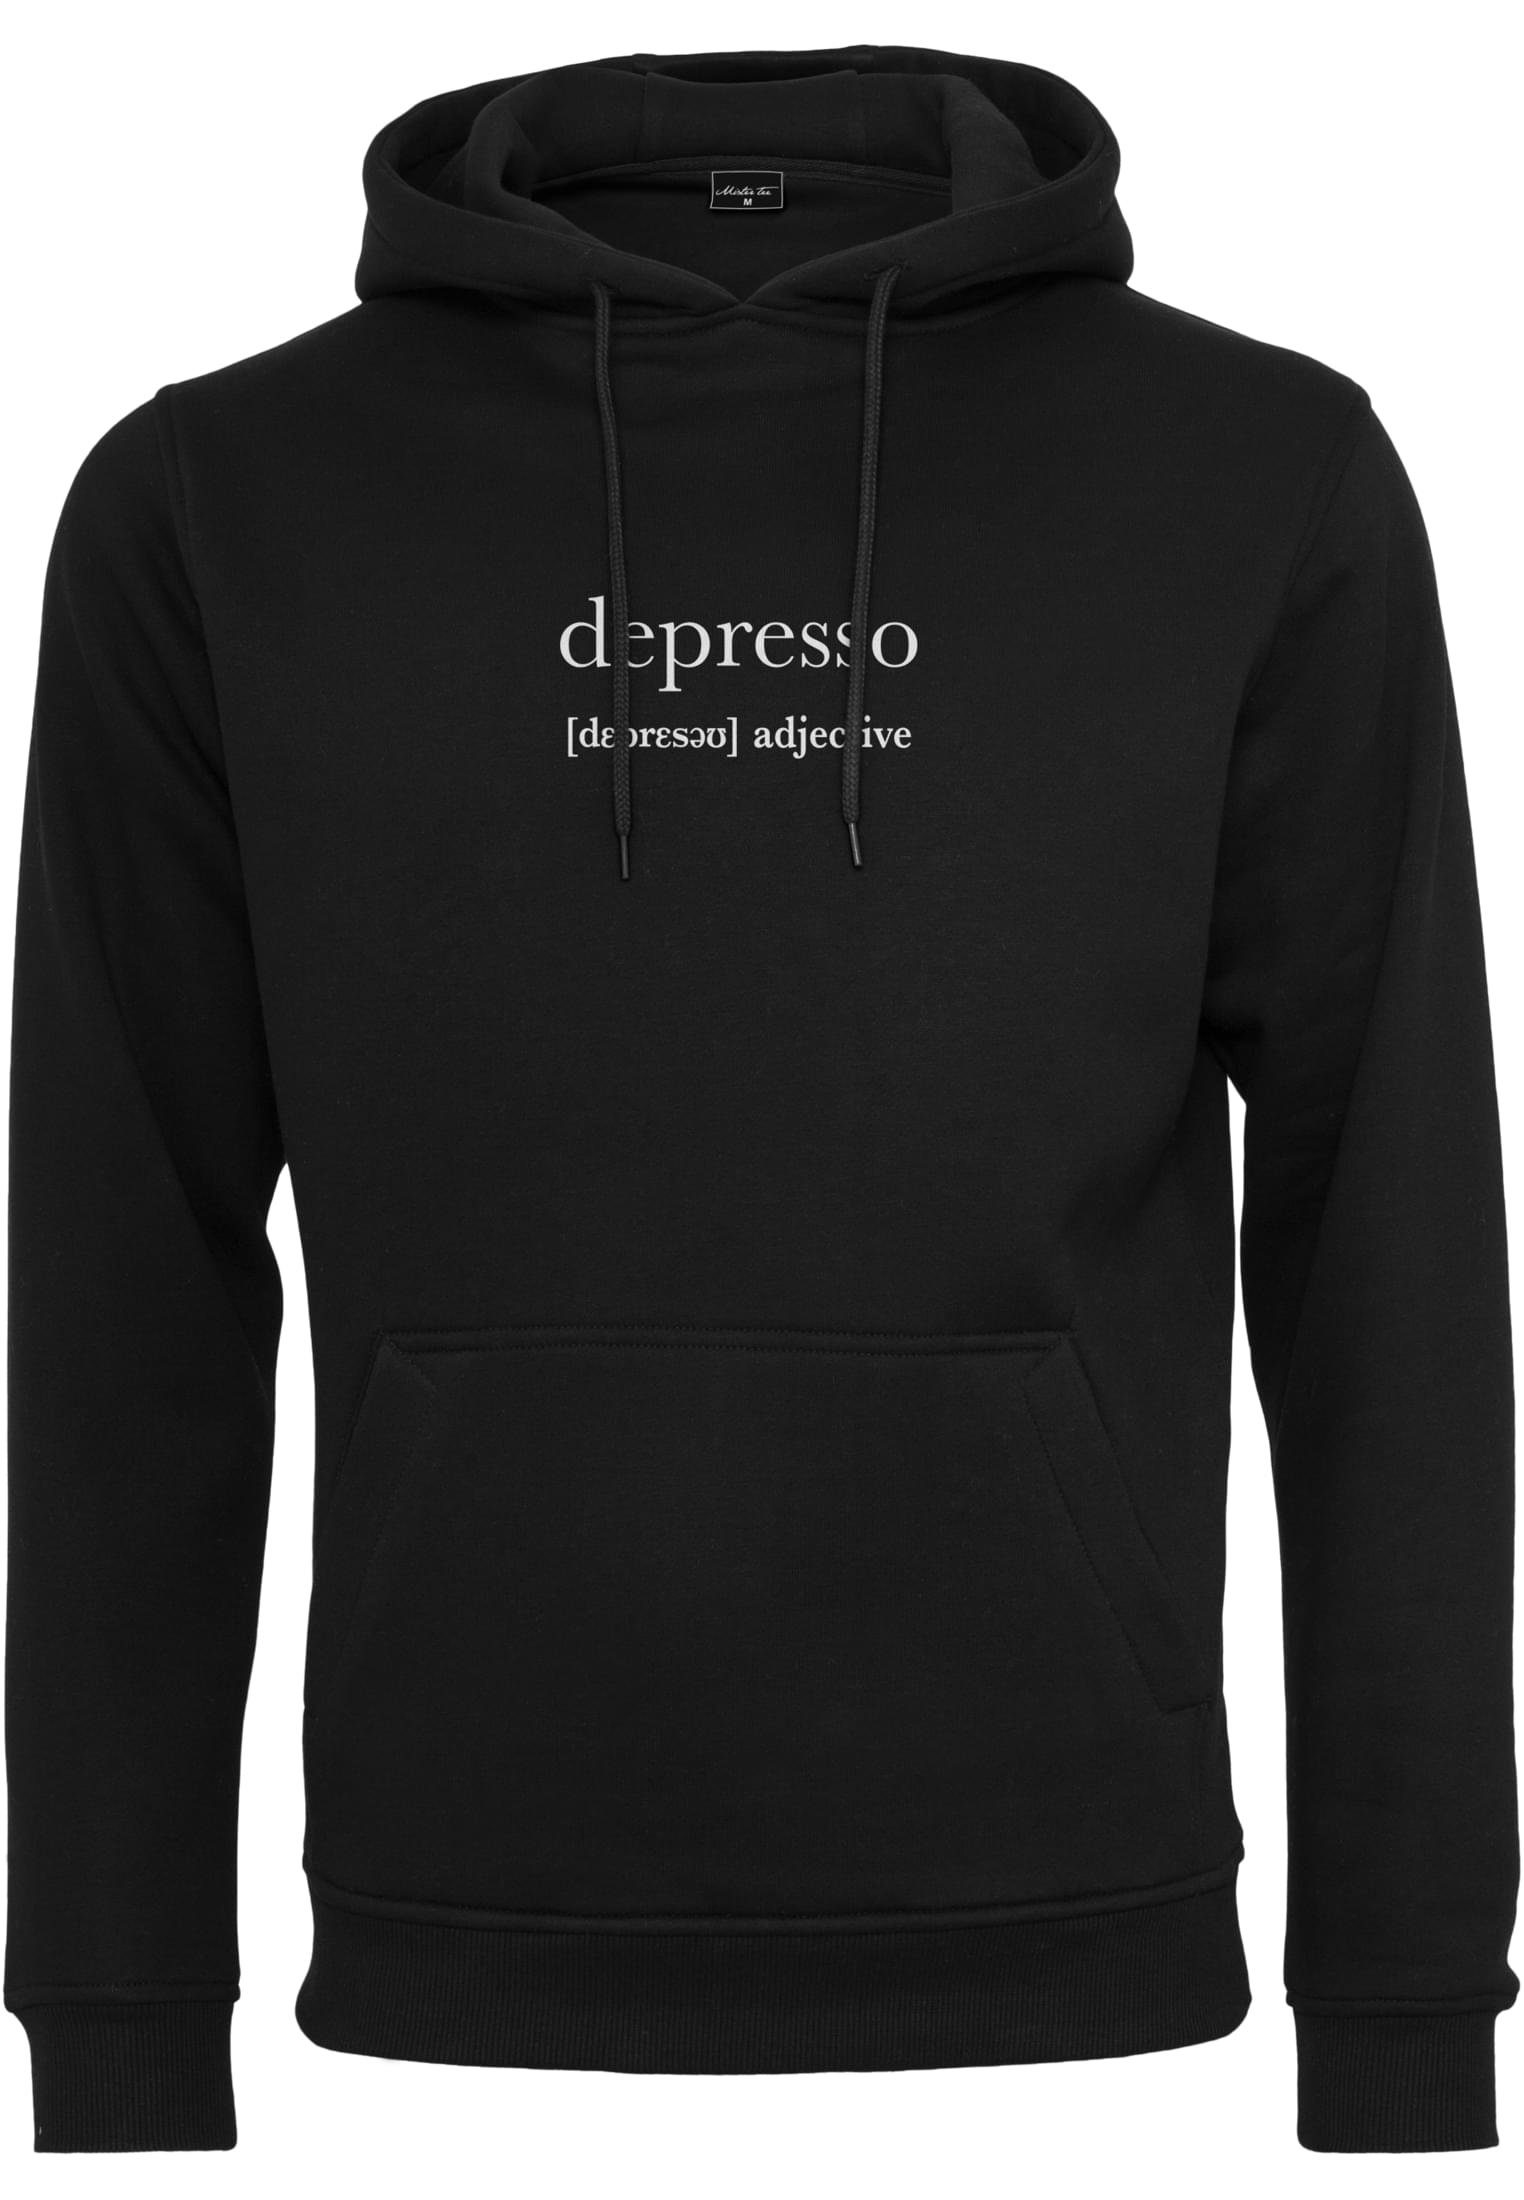 Sweater Herren (1-tlg) MisterTee Depresso black Hoody